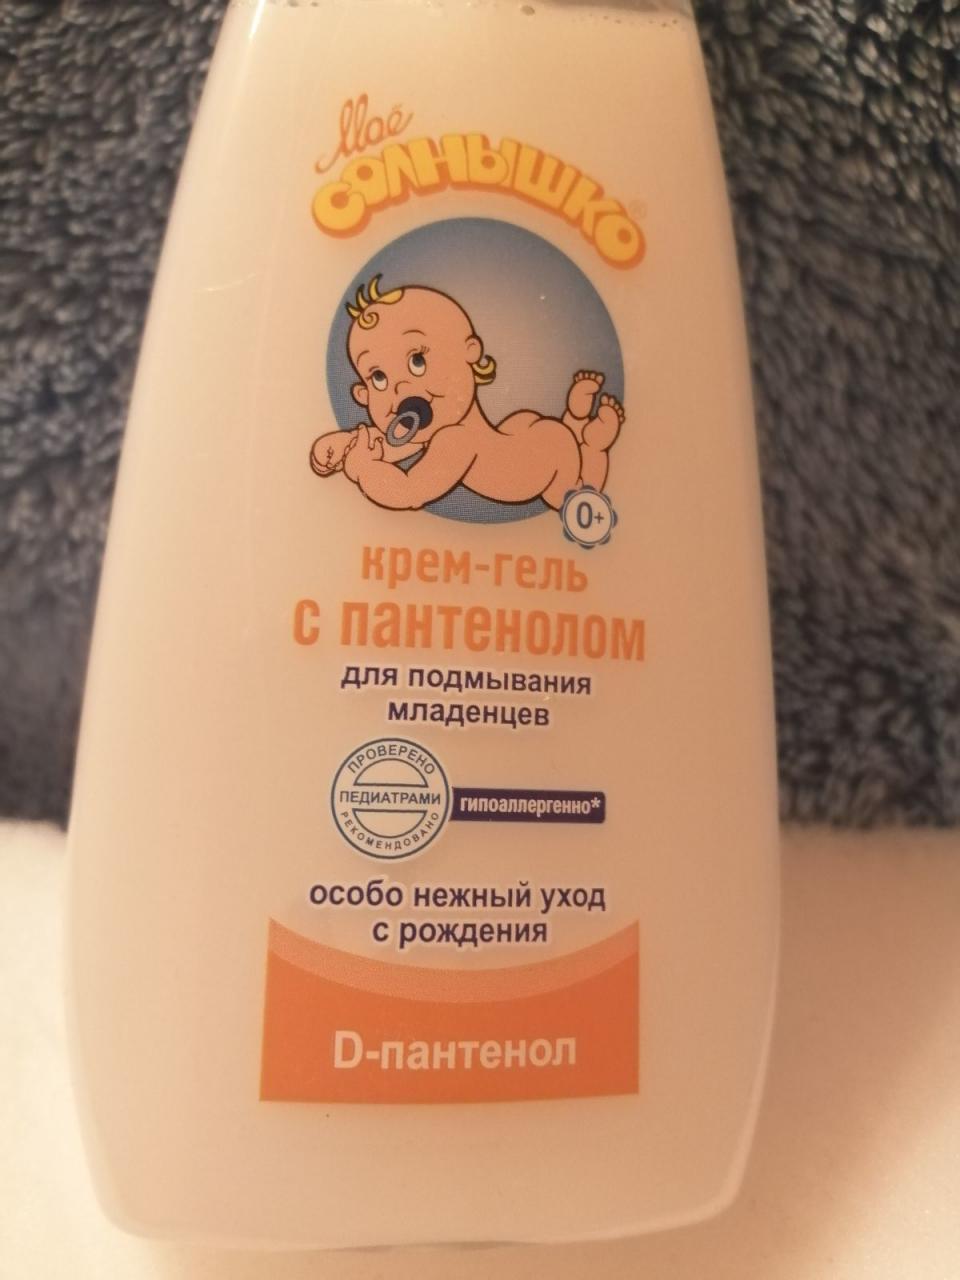 Отзыв на товар: Крем-гель для подмывания младенцев с пантенолом. Моё солнышко.